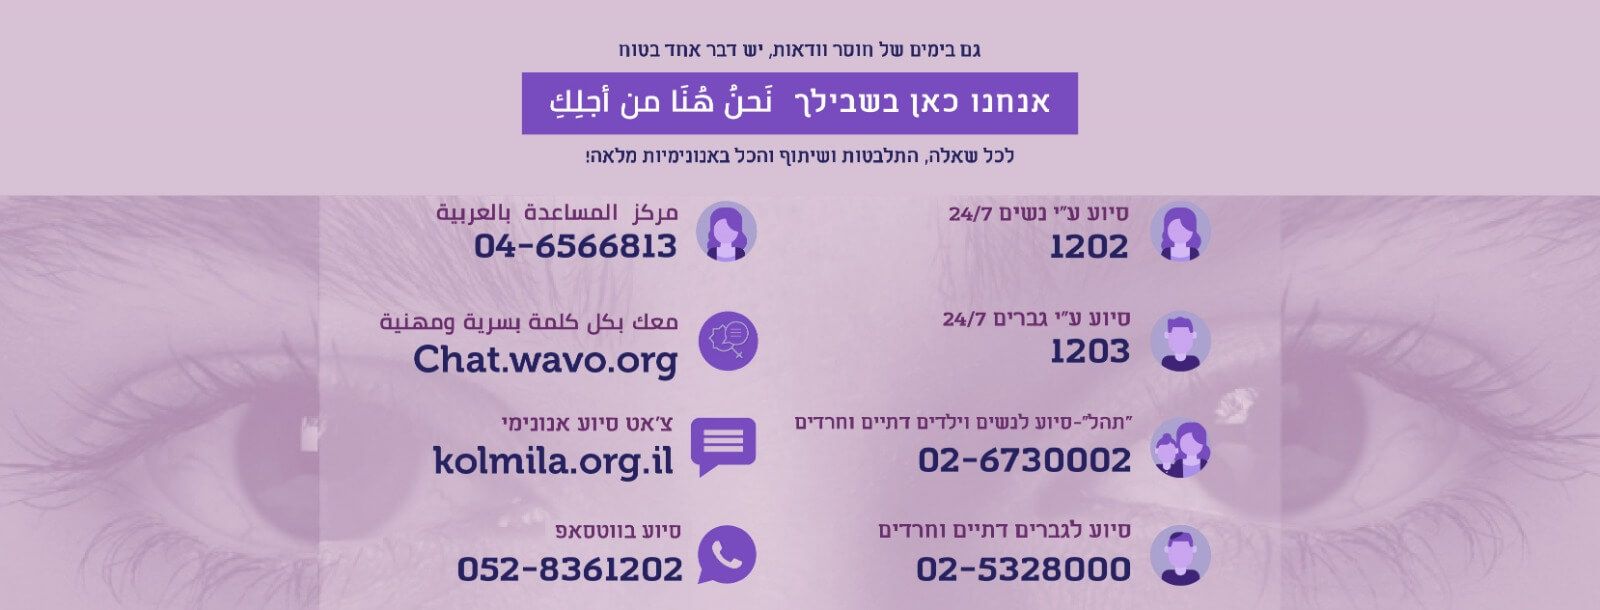 איגוד מרכזי הסיוע לנפגעות תקיפה מינית ולנפגעי תקיפה מינית בישראל